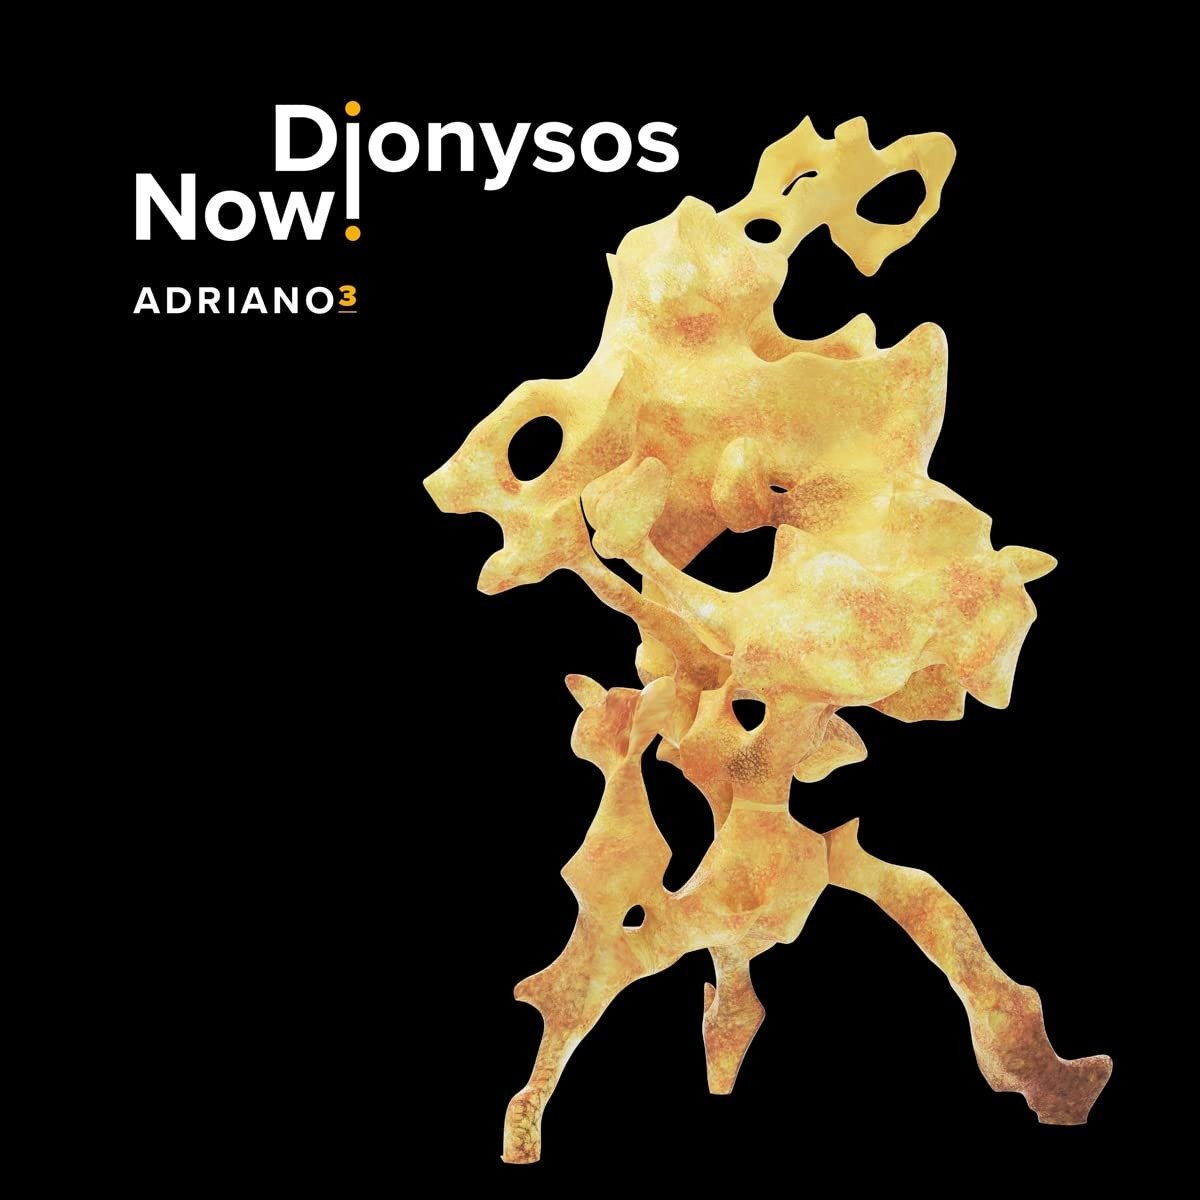 CD Shop - DIONYSOS NOW! ADRIANO 3